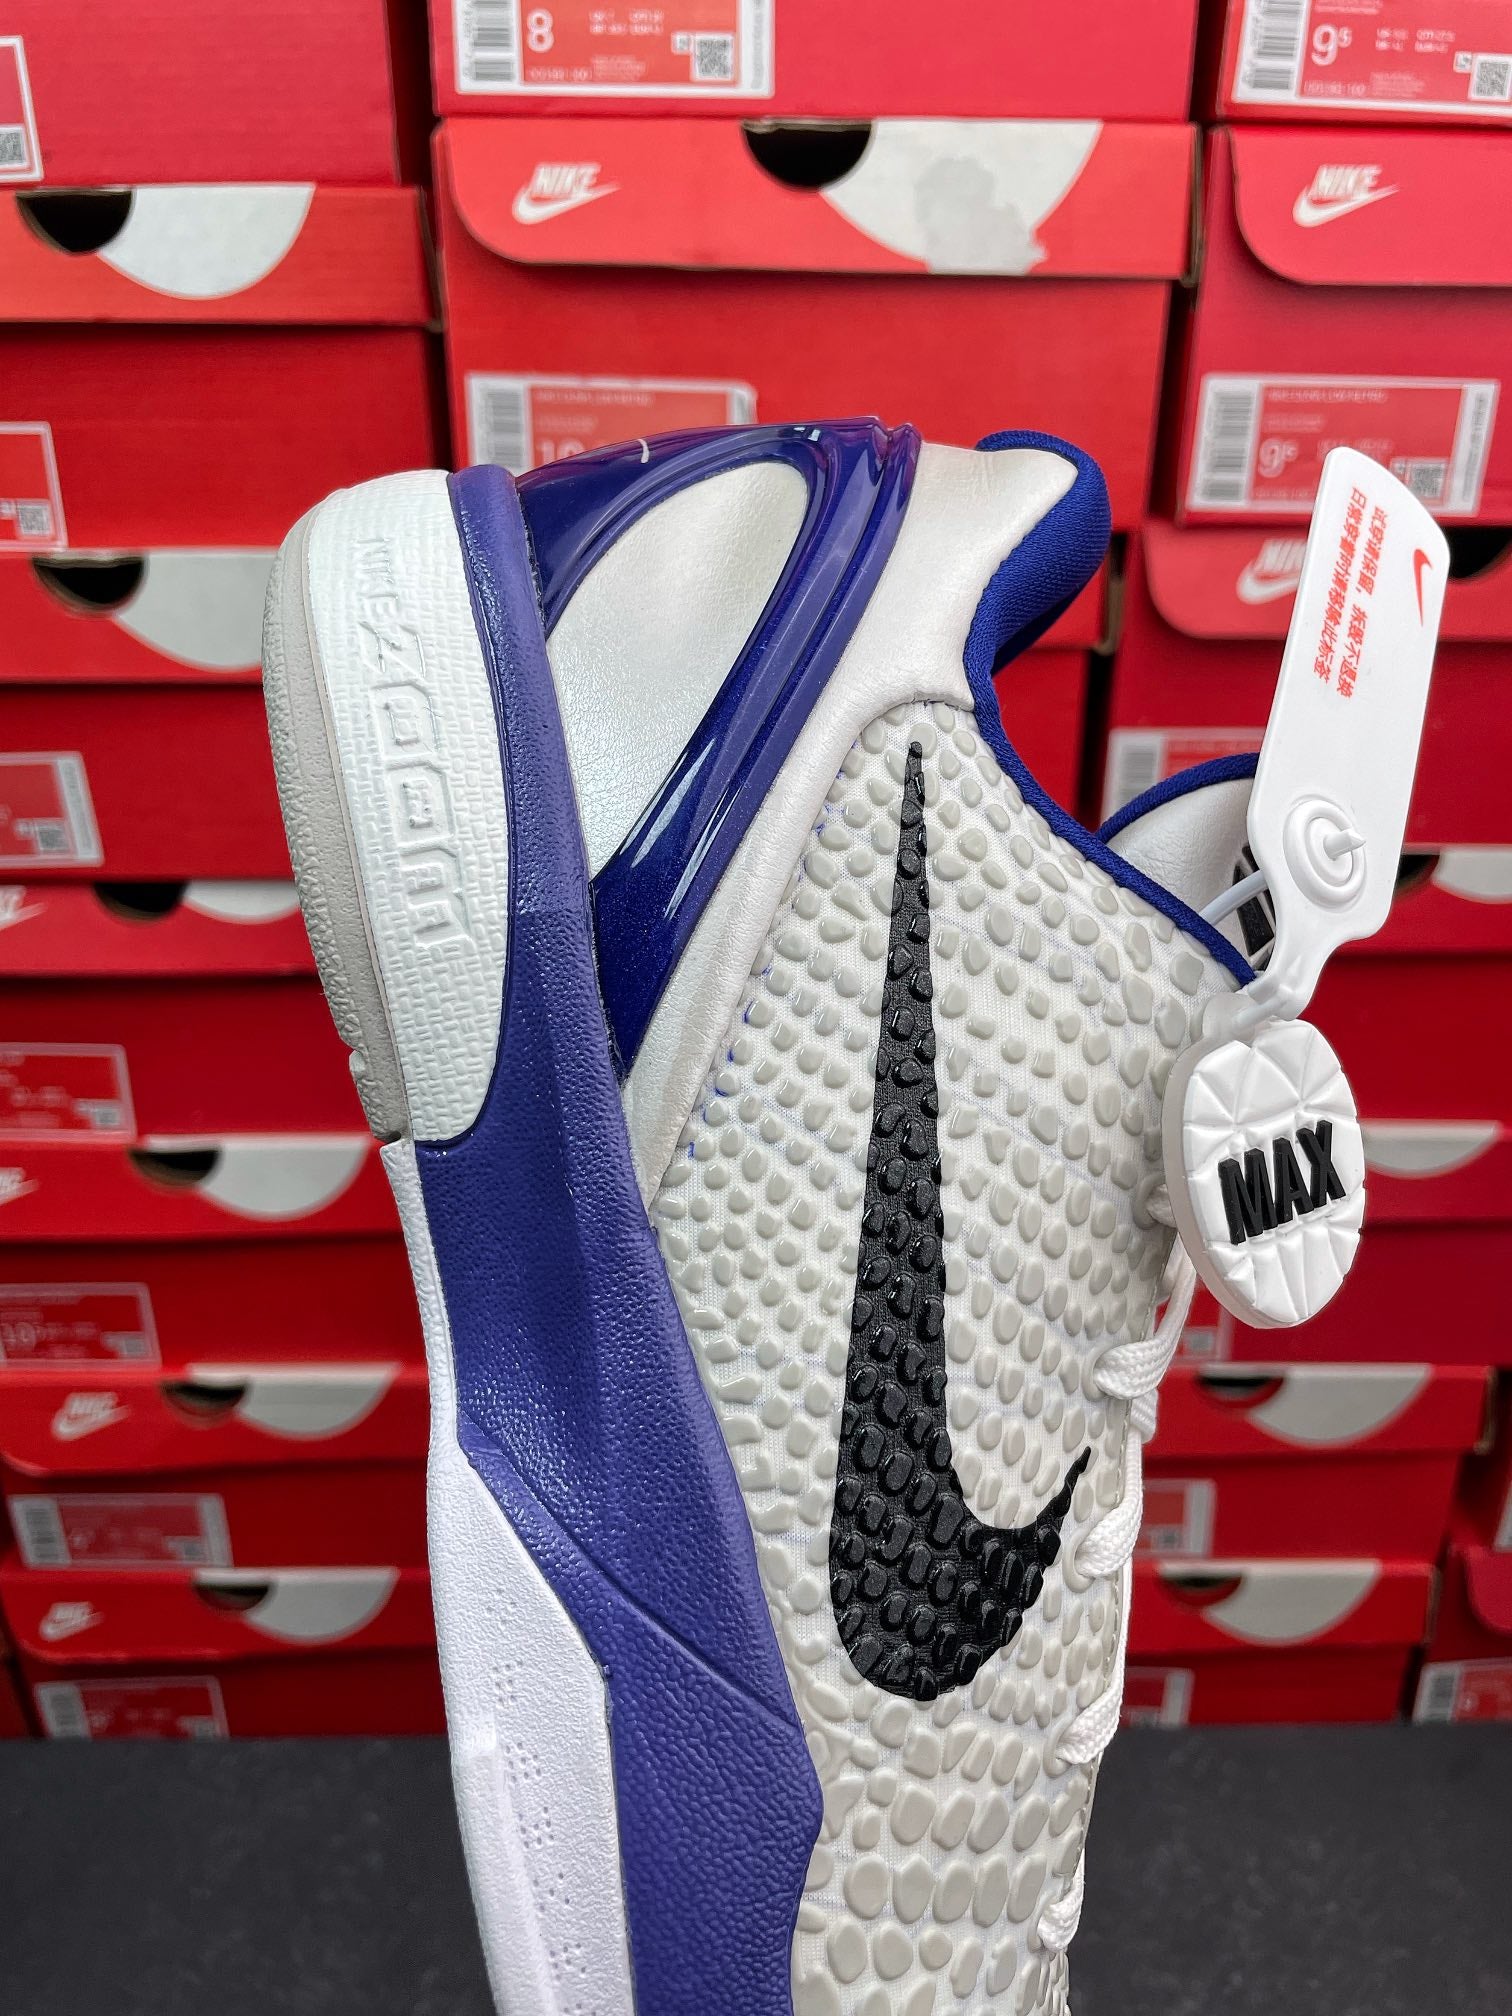 Max Batch-Nike Zoom Kobe 6 Protro “Concord”